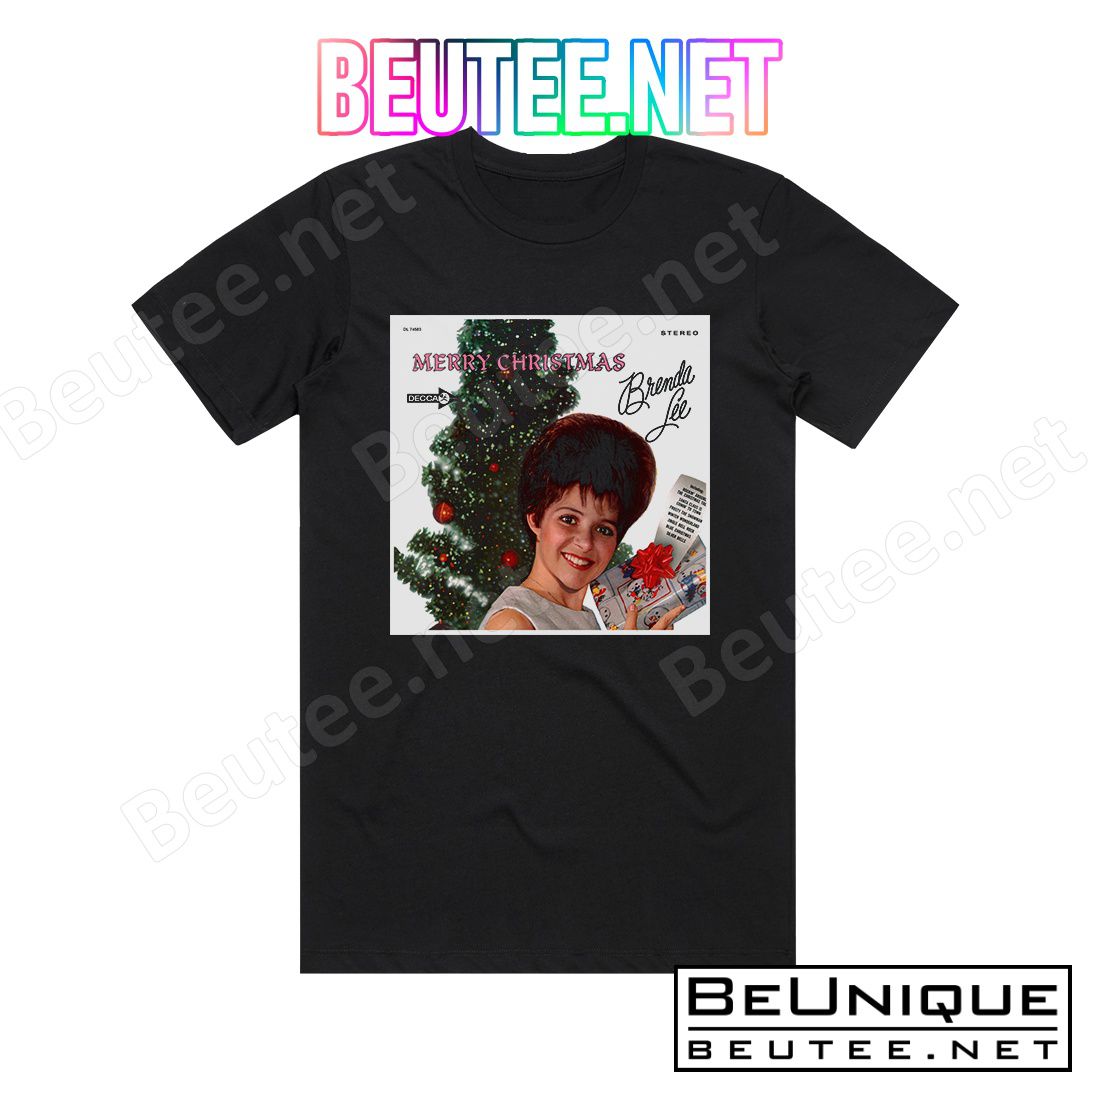 Brenda Lee Merry Christmas From Brenda Lee Album Cover T-Shirt